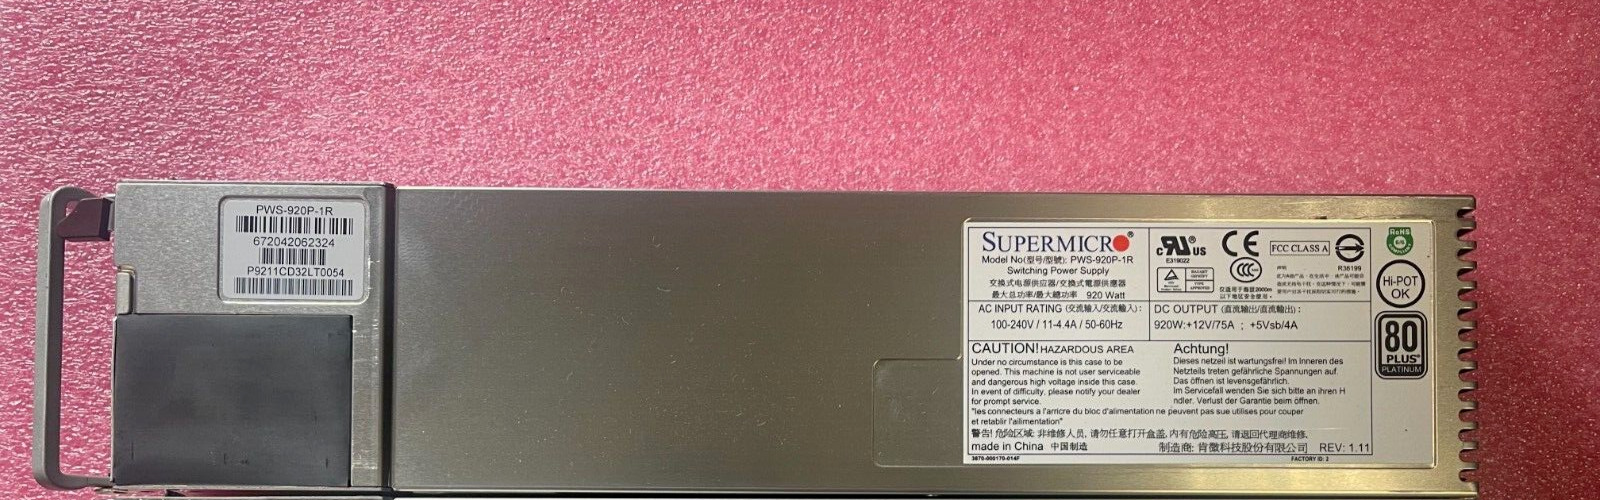 Supermicro PWS-920P-1R 920W 1U 11A 240V PSU 80 Plus Platinum